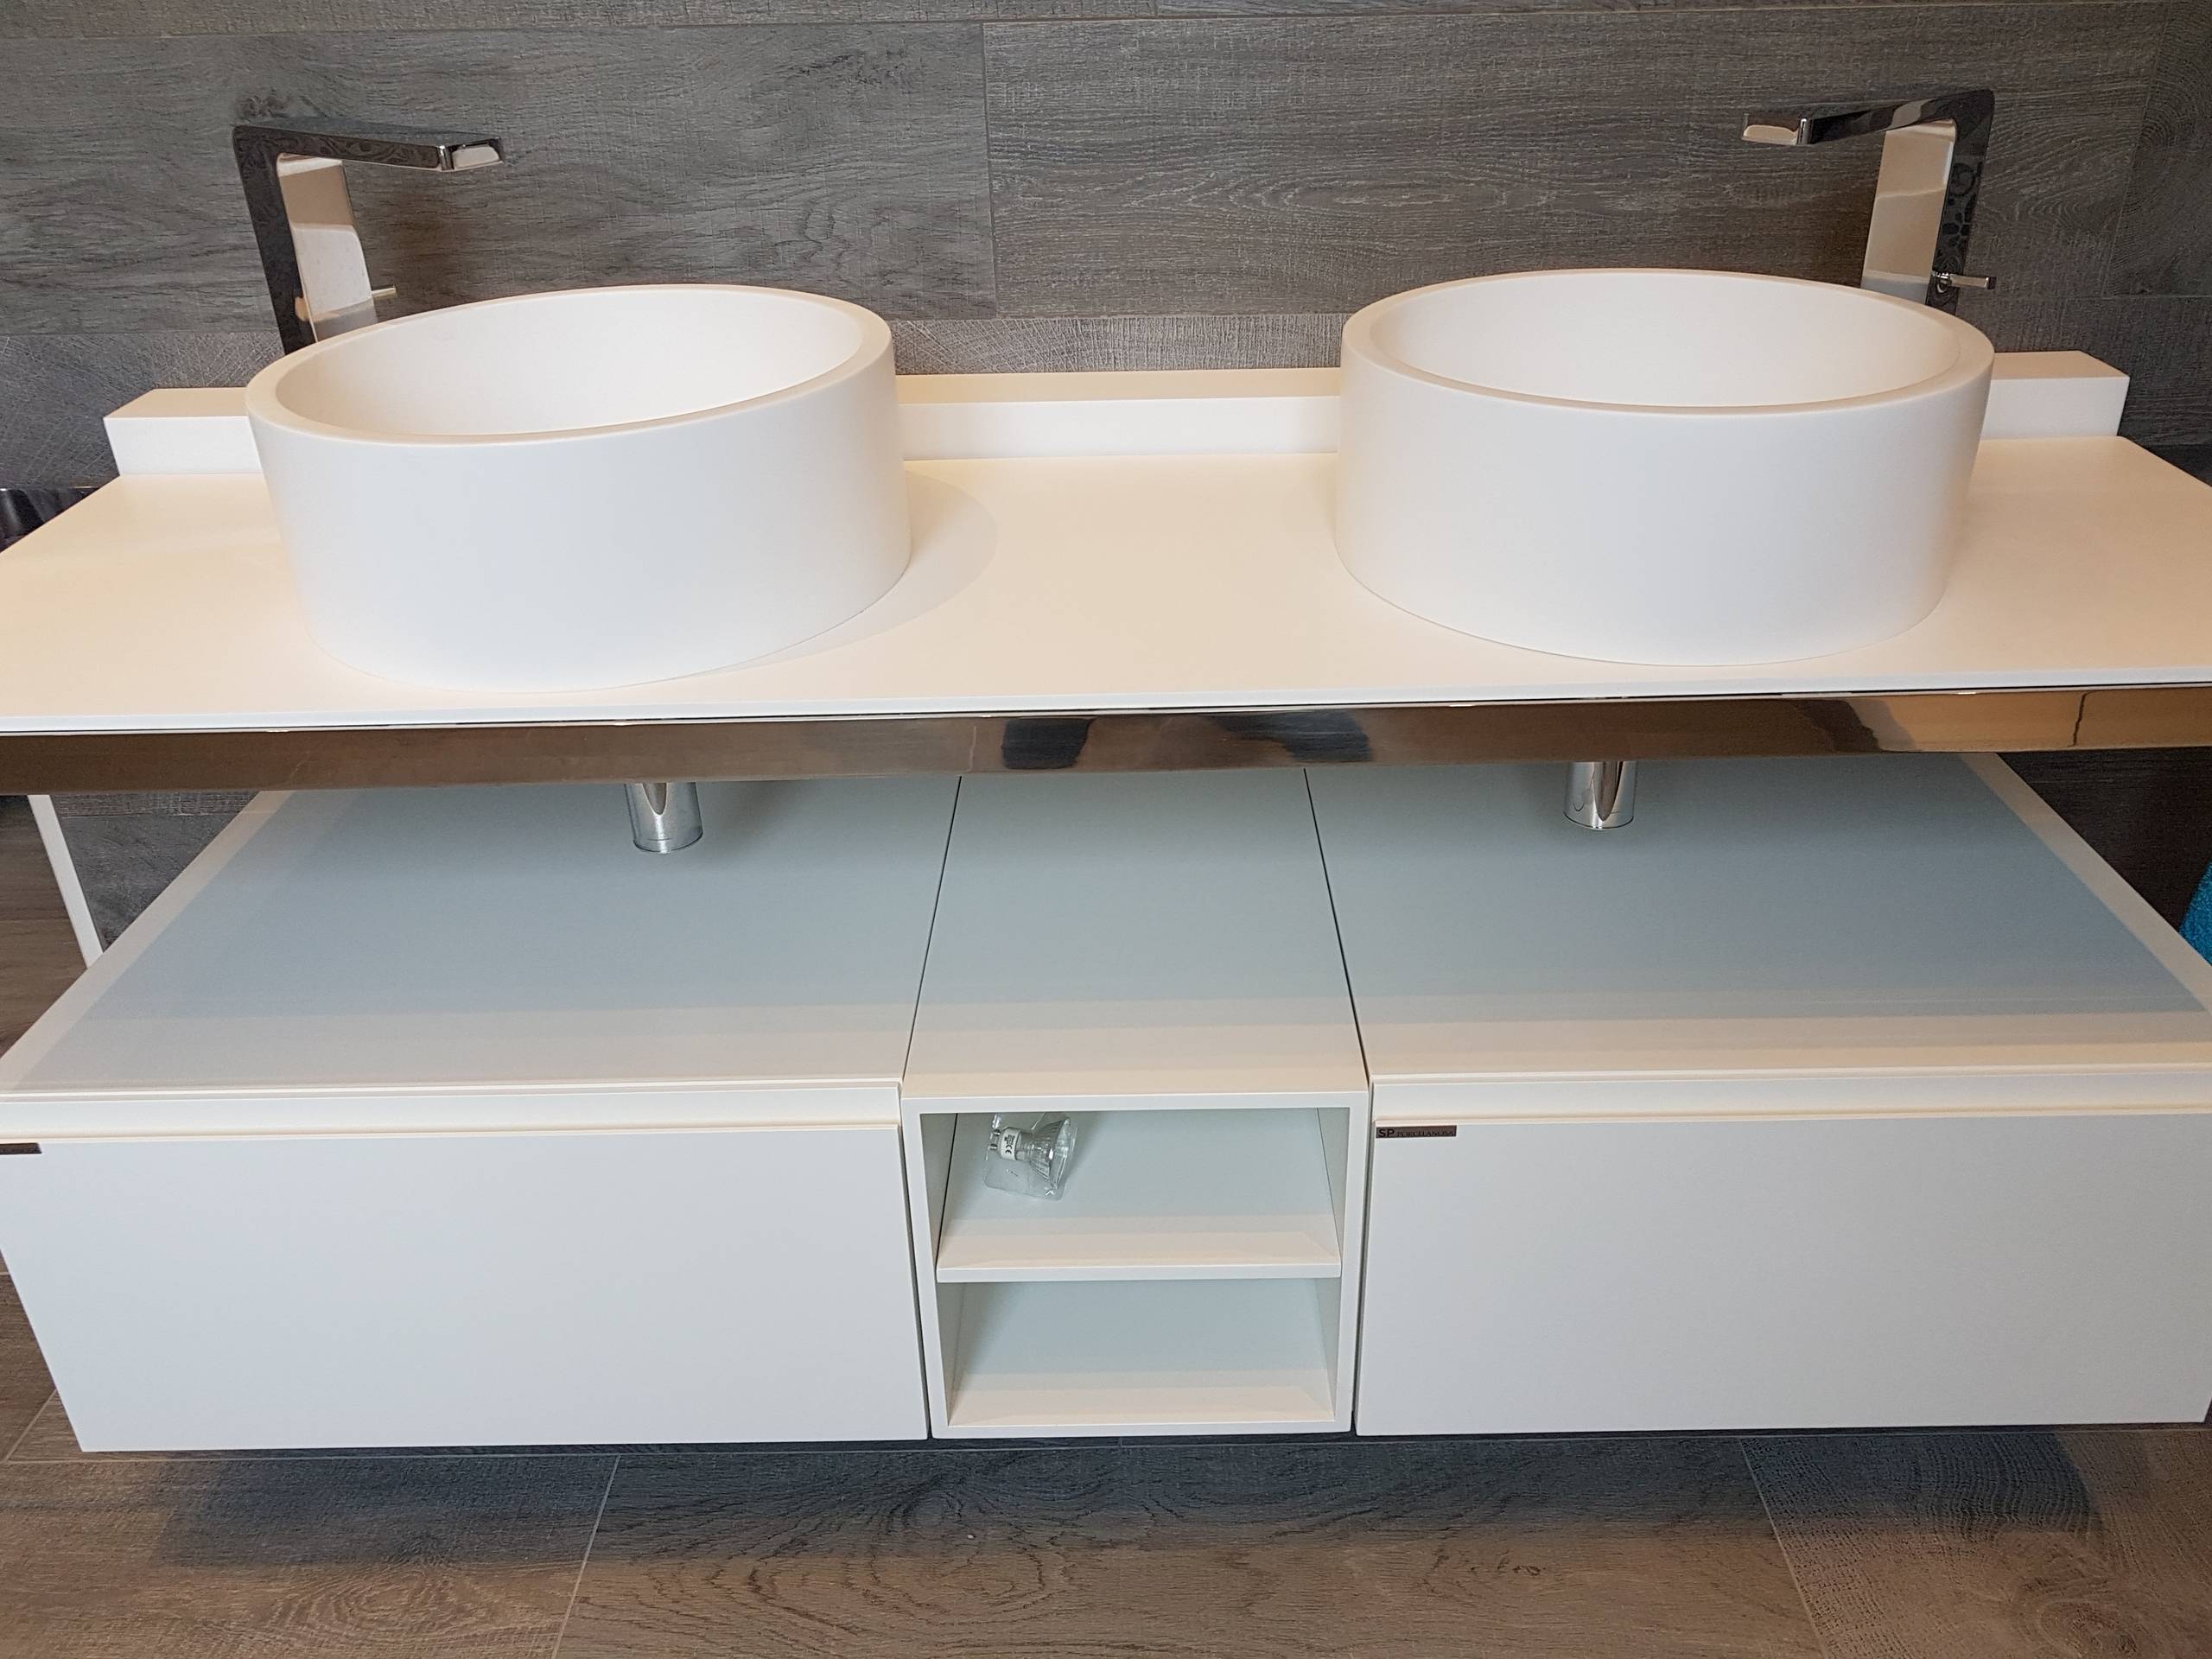 Plan et vasques en Corian, meubles rangement design